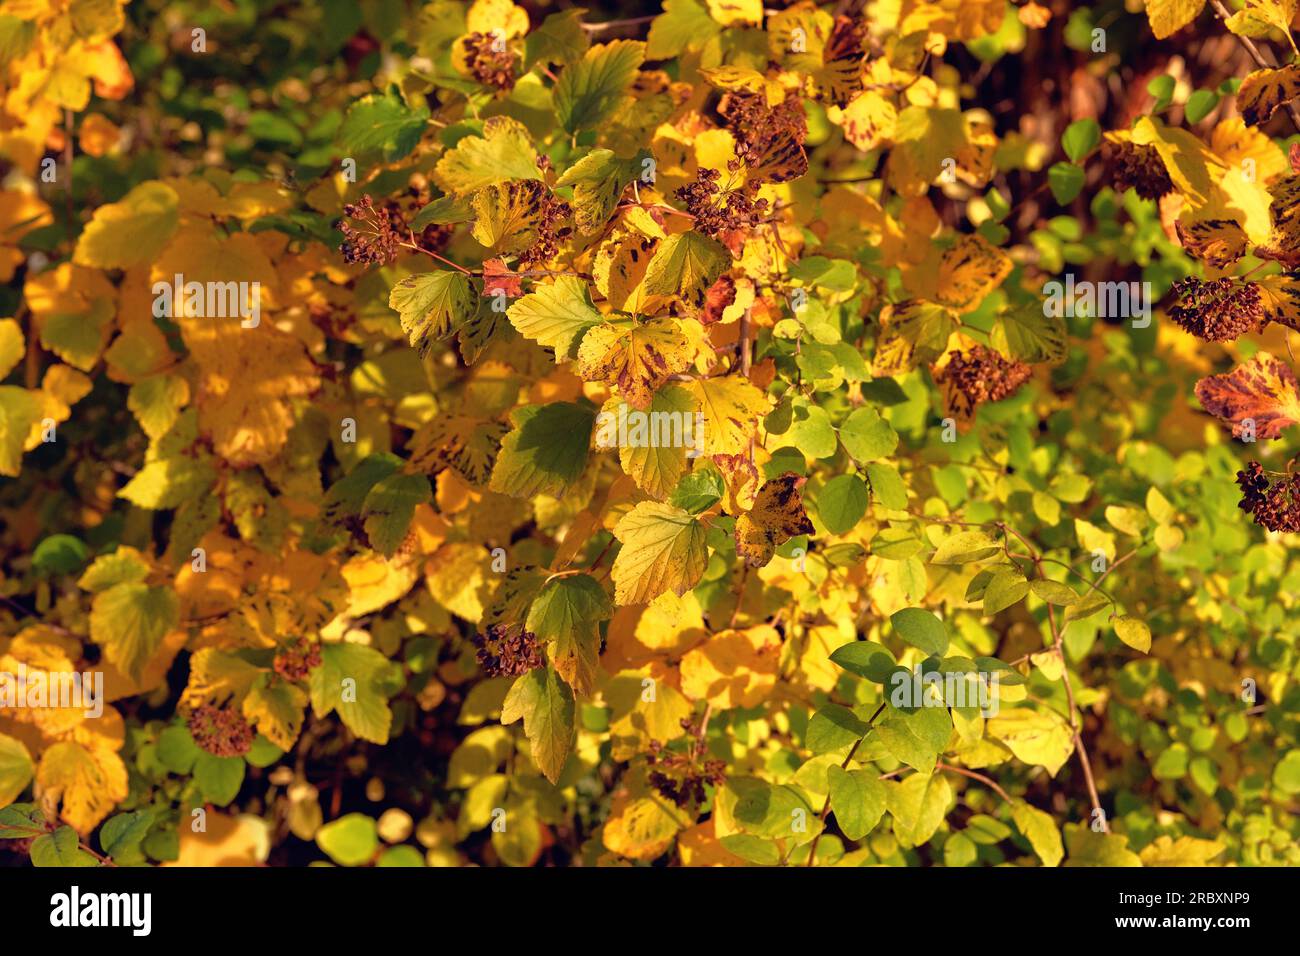 Golden Autumn Concept. Foglie gialle autunnali perfette per l'uso stagionale. Clima caldo nelle giornate di sole. Foto Stock